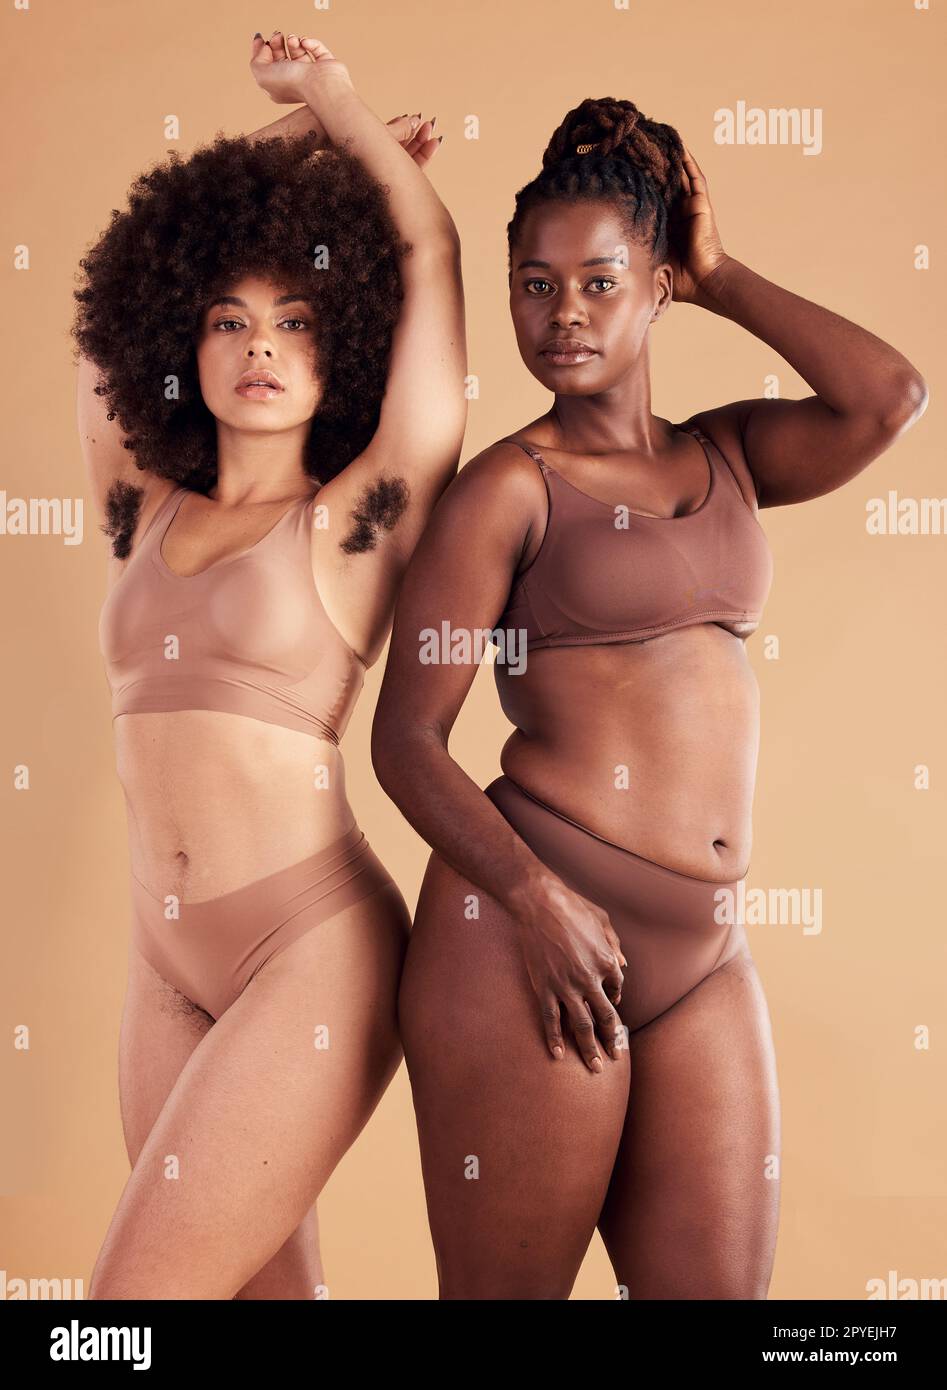 Körperpositive, befähigende und schwarze Frauen mit Körperbehaarung für natürliche Schönheit, Pflege der Haut und Selbstvertrauen auf braunem Studiohintergrund. Selbstliebe, Wellness und afrikanische Modellfreunde mit haarigen Achseln Stockfoto